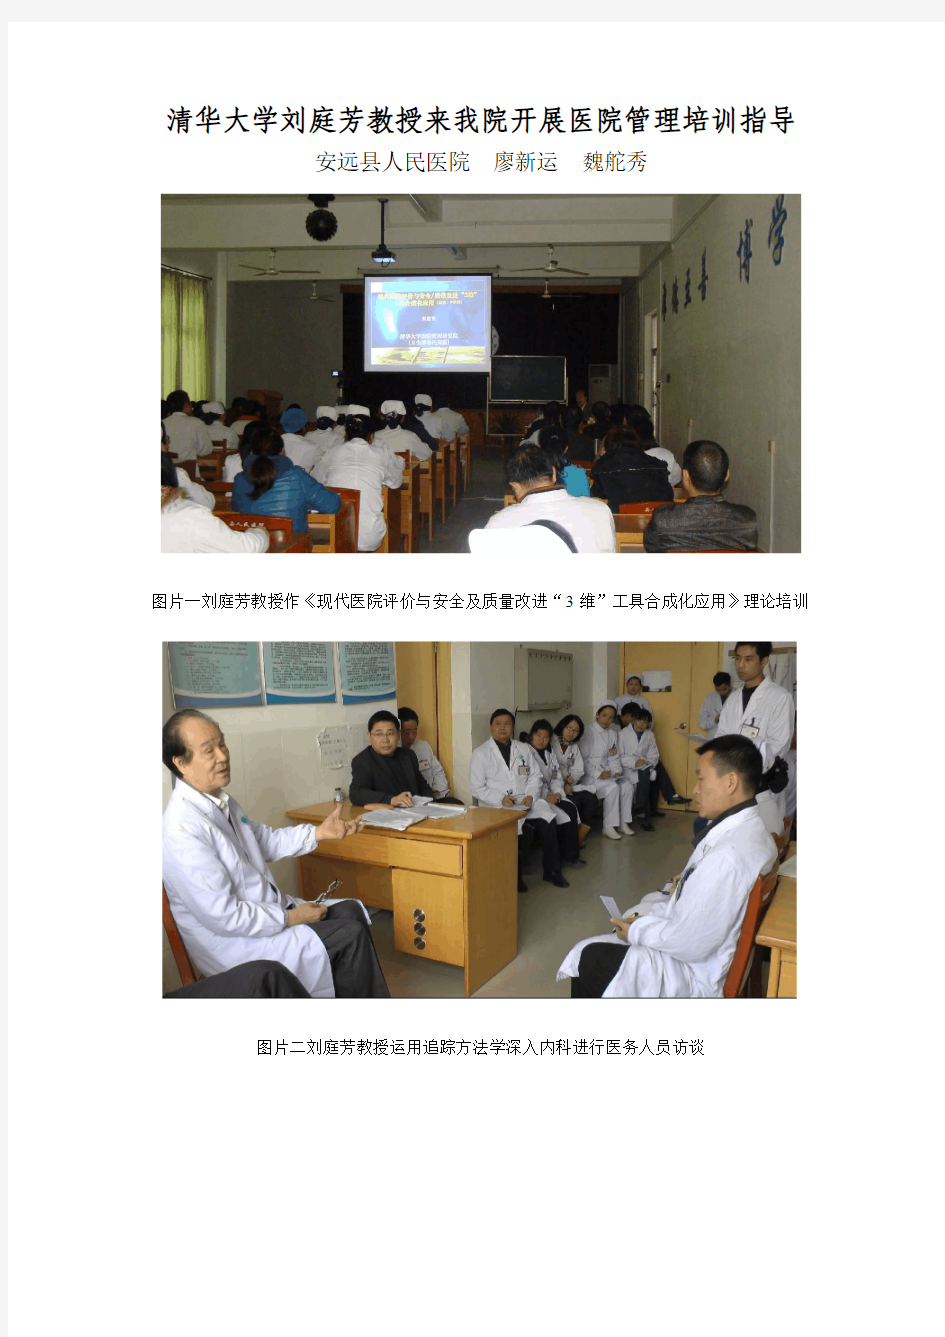 清华大学刘庭芳教授来我院开展医院管理培训指导